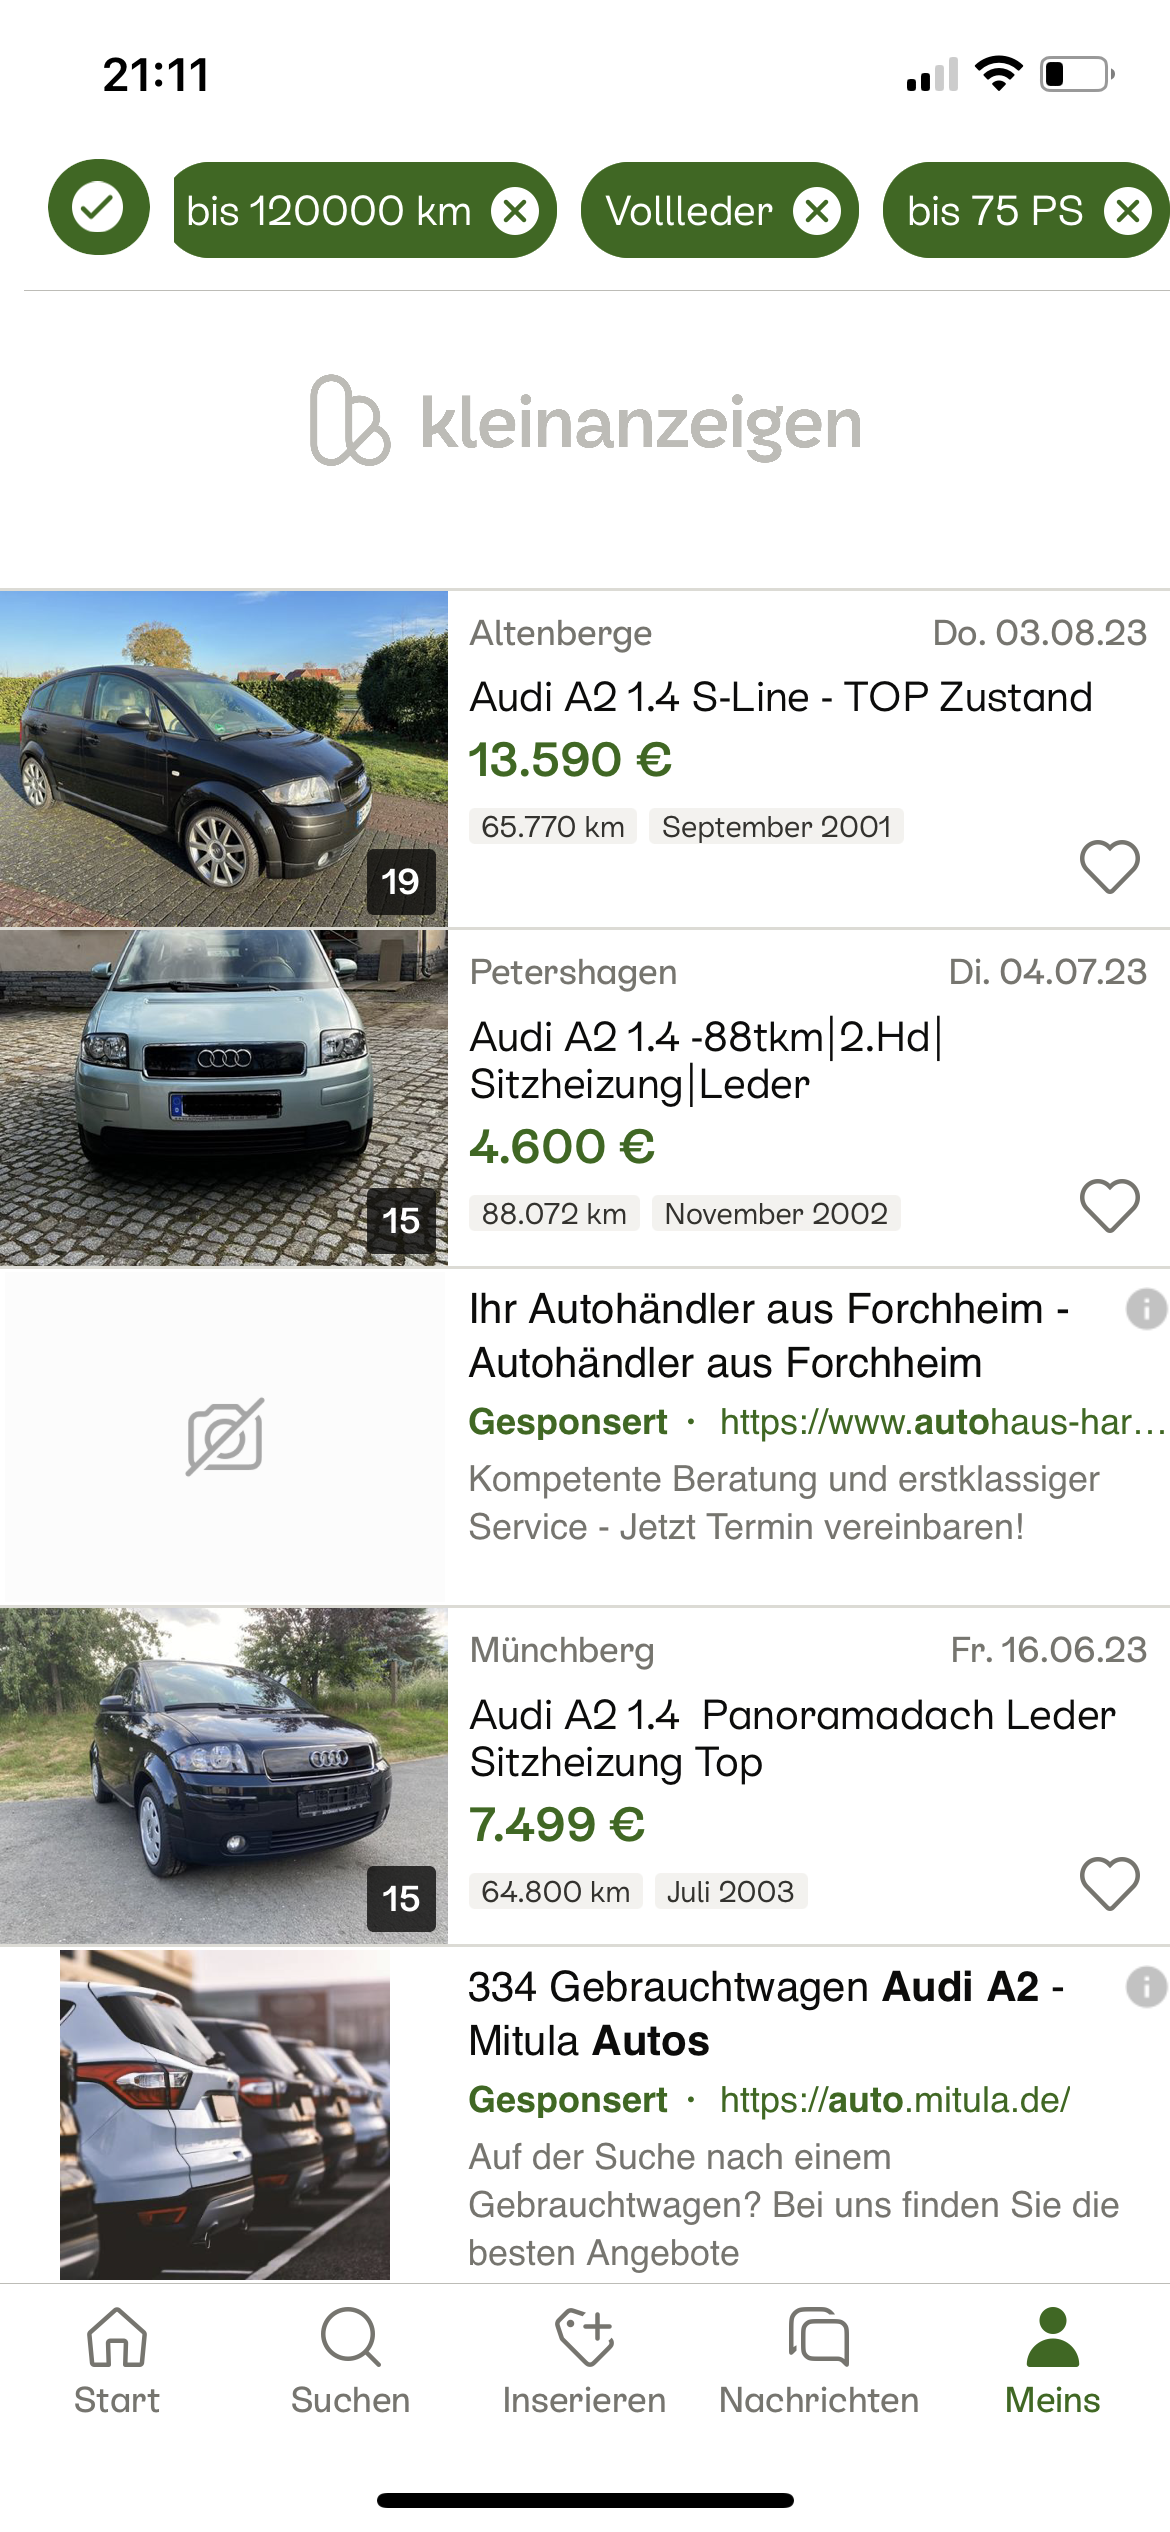 Hier wird ein A2 verkauft - könnte ja interessant sein - Seite 194 -  Verbraucherberatung - Audi A2 Club Deutschland